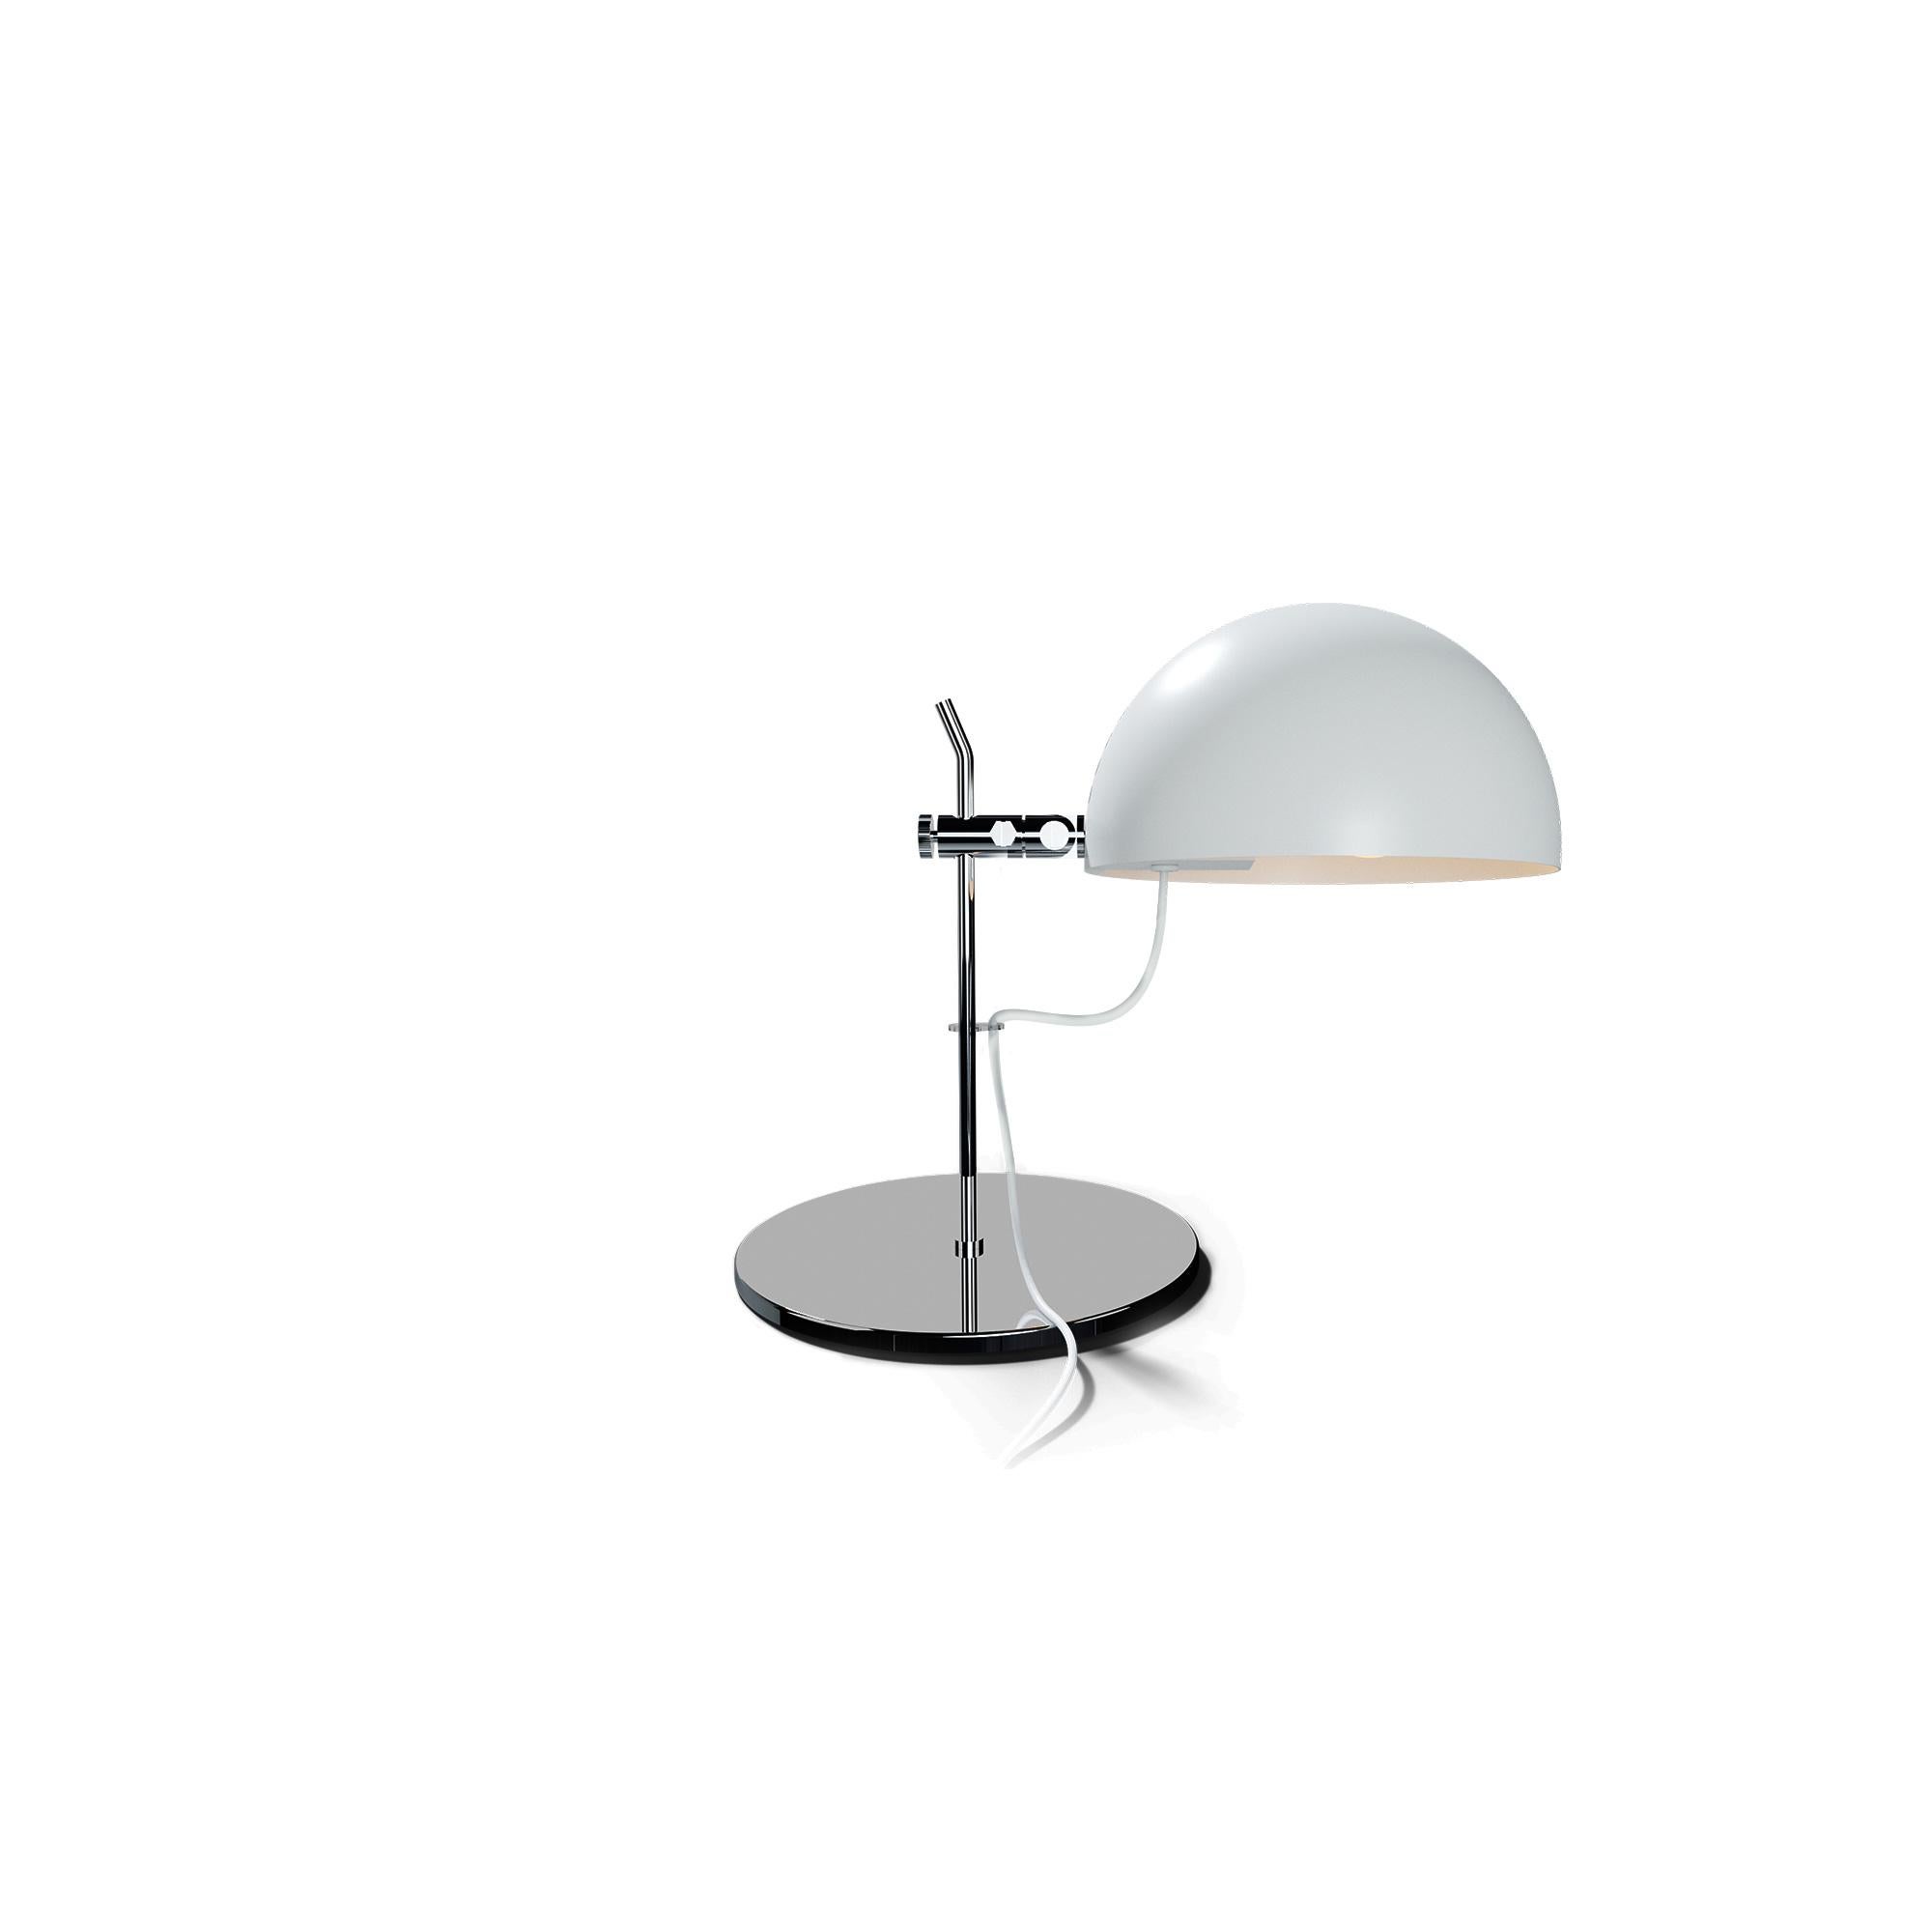 Alain Richard 'A22' Desk Lamp in Chrome for Disderot For Sale 2